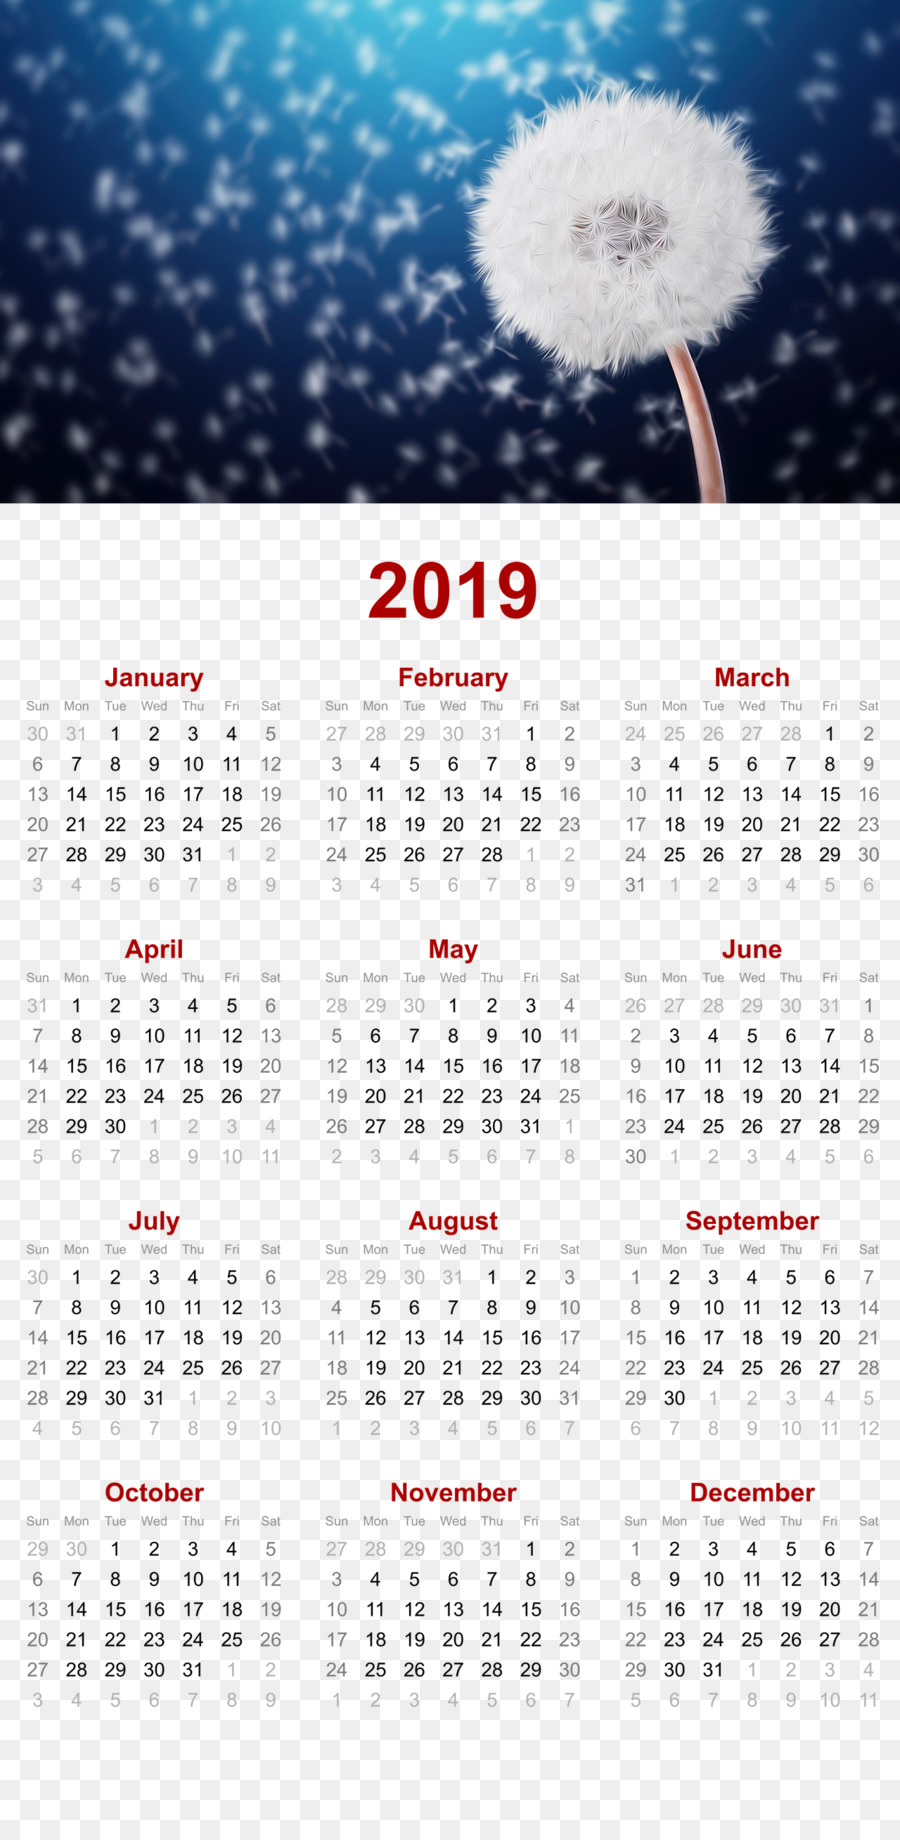 2019 printable calendar - dandelion nature design. - others png download - 1280*2593 - Free Transparent 2019 Calendar Printable png Download.